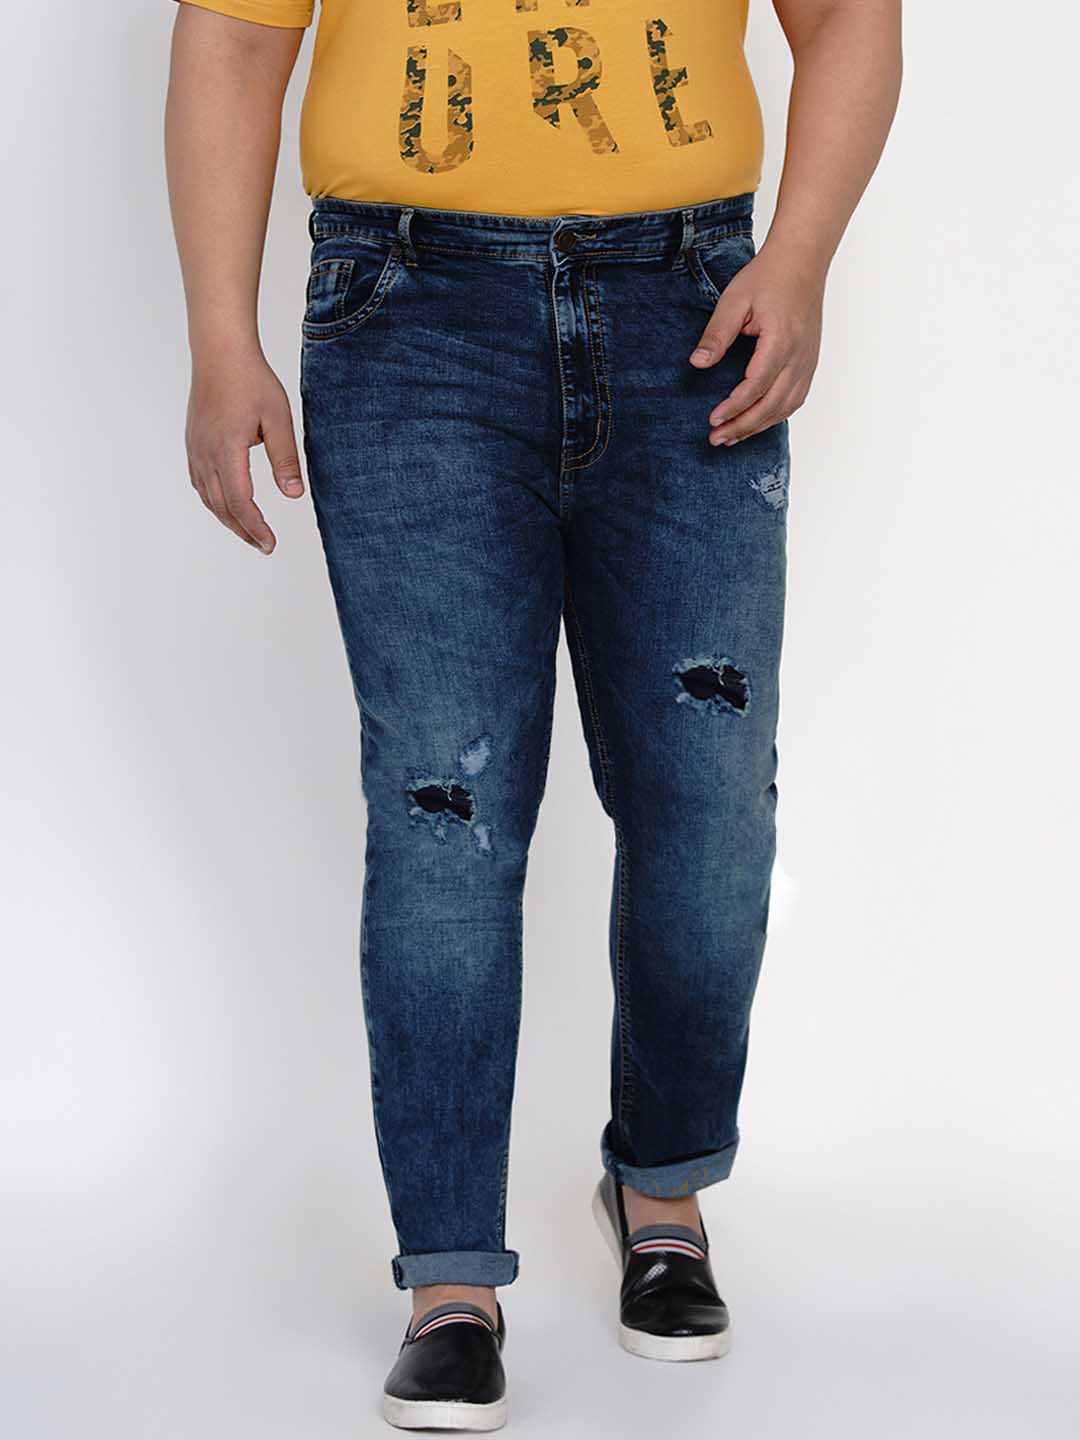 bottomwear/jeans/JPJ12111/jpj12111-1.jpg